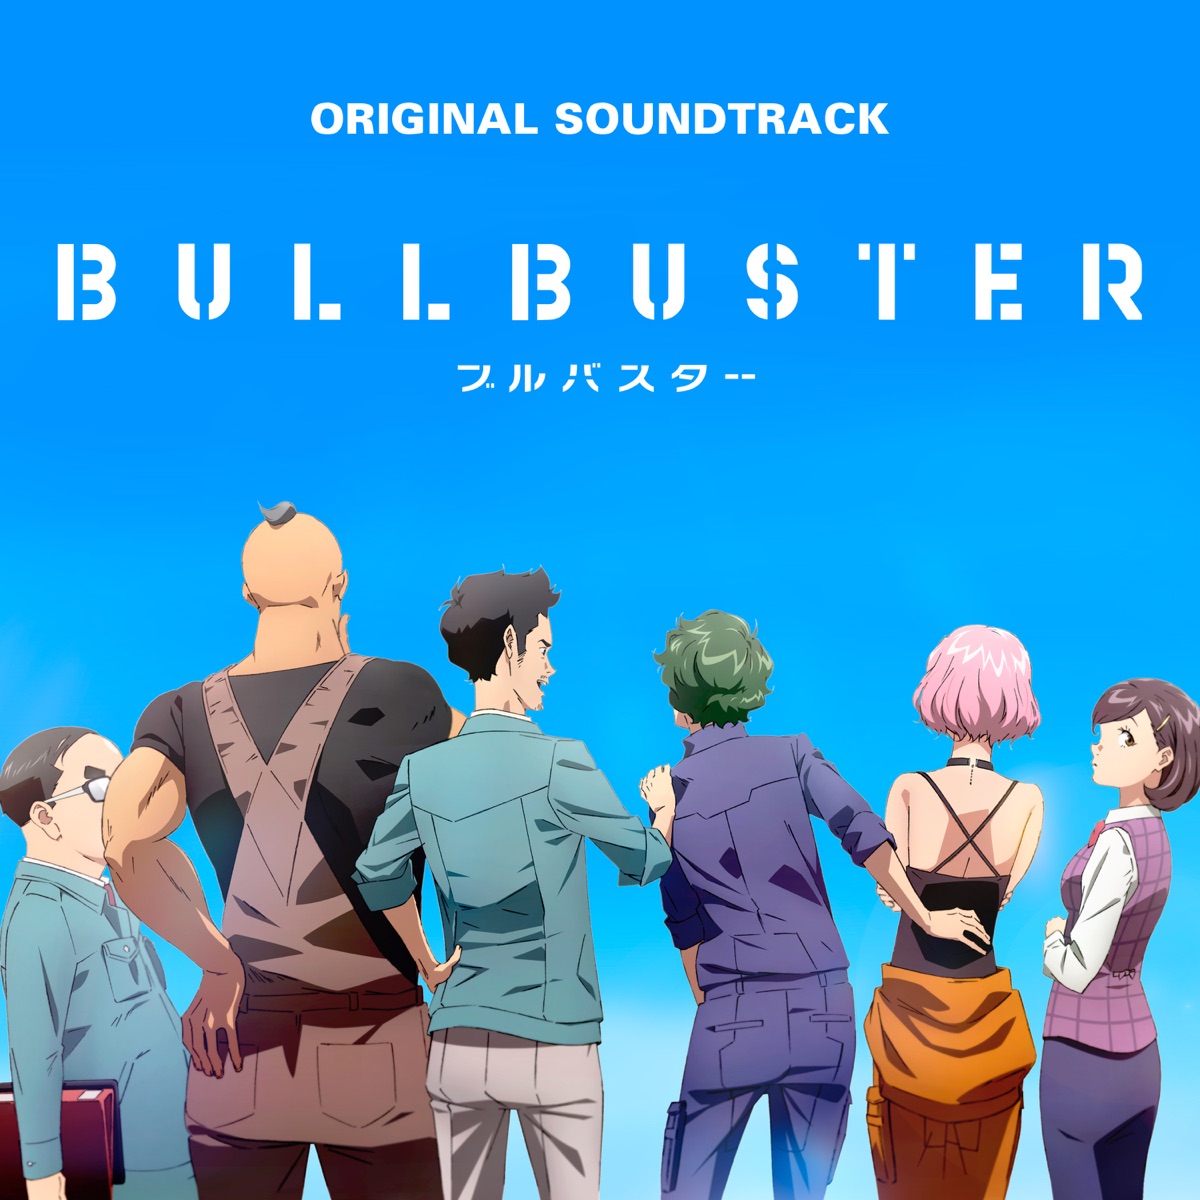 Bgm from Tv Series Bullbuster - Album by Masahiro Tokuda - Apple Music